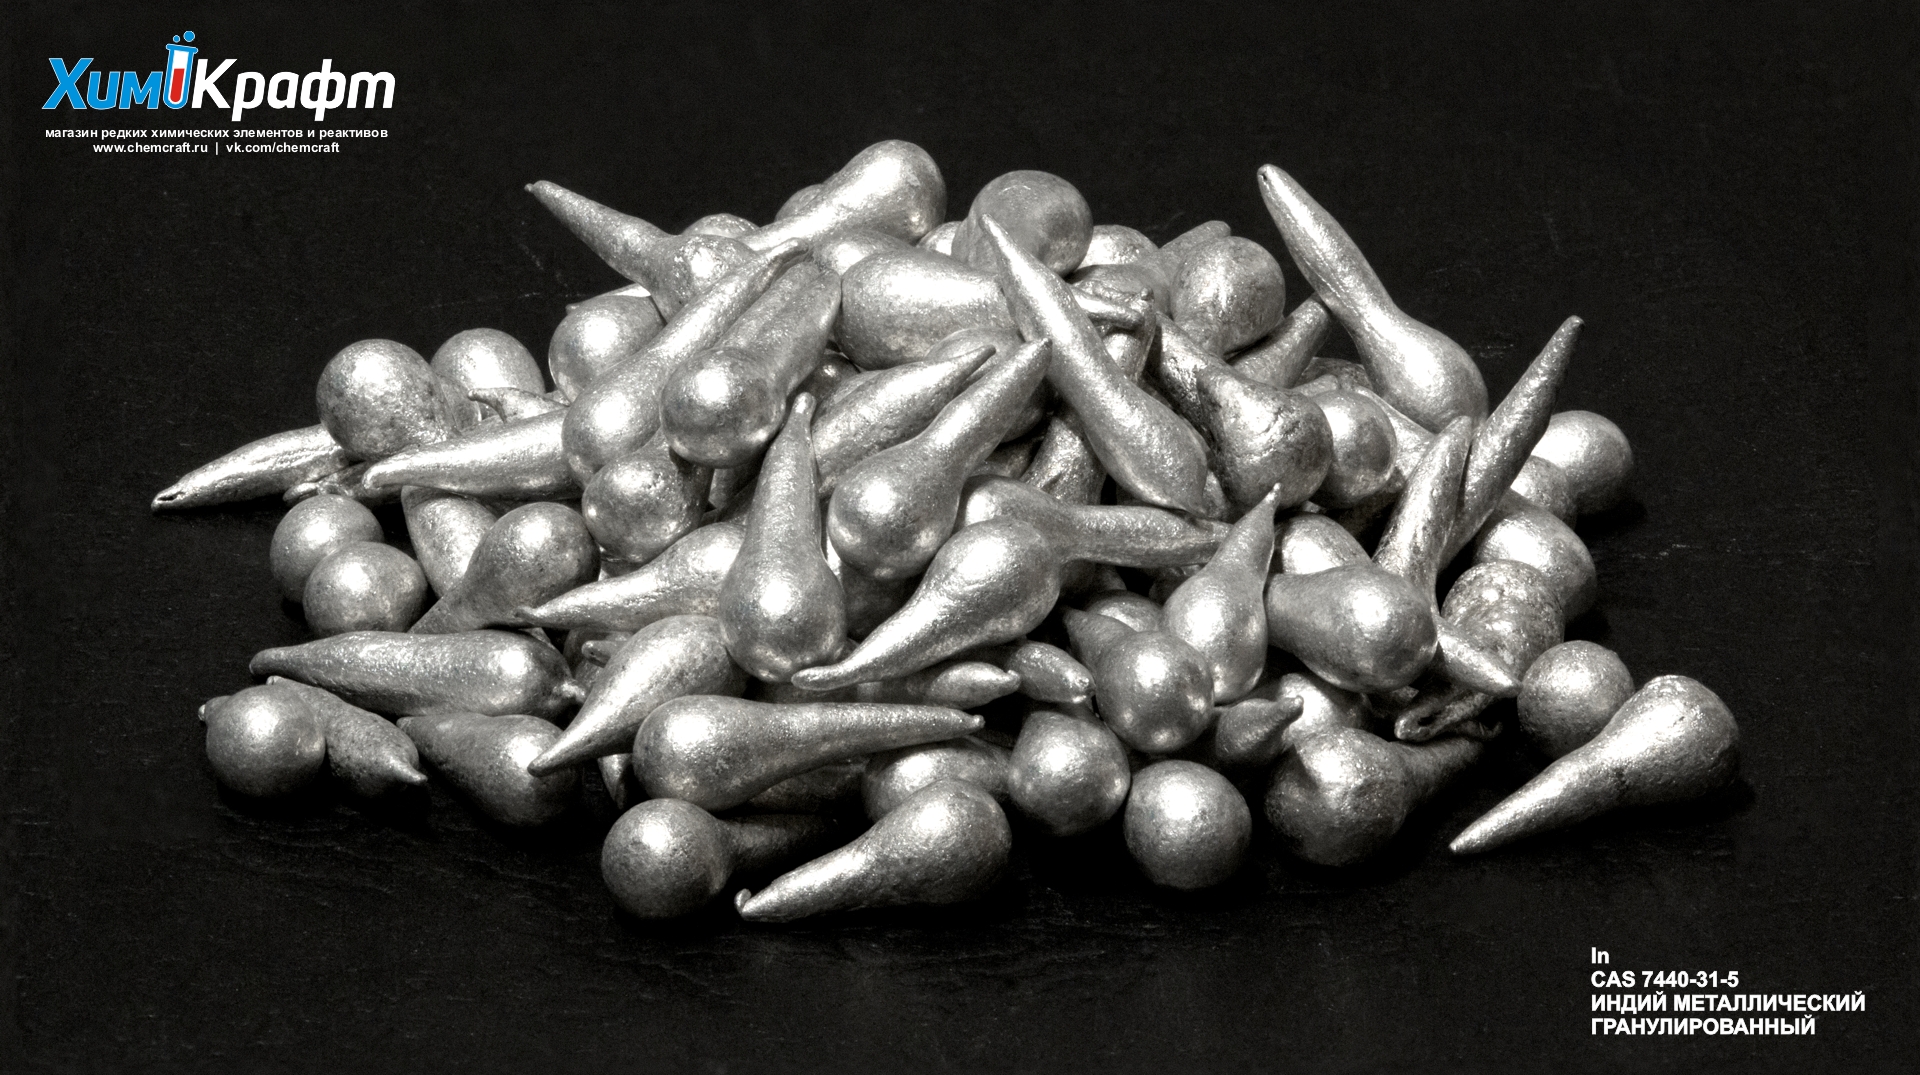 Индий металлический гранулированный, 99.999% (ИН-00)